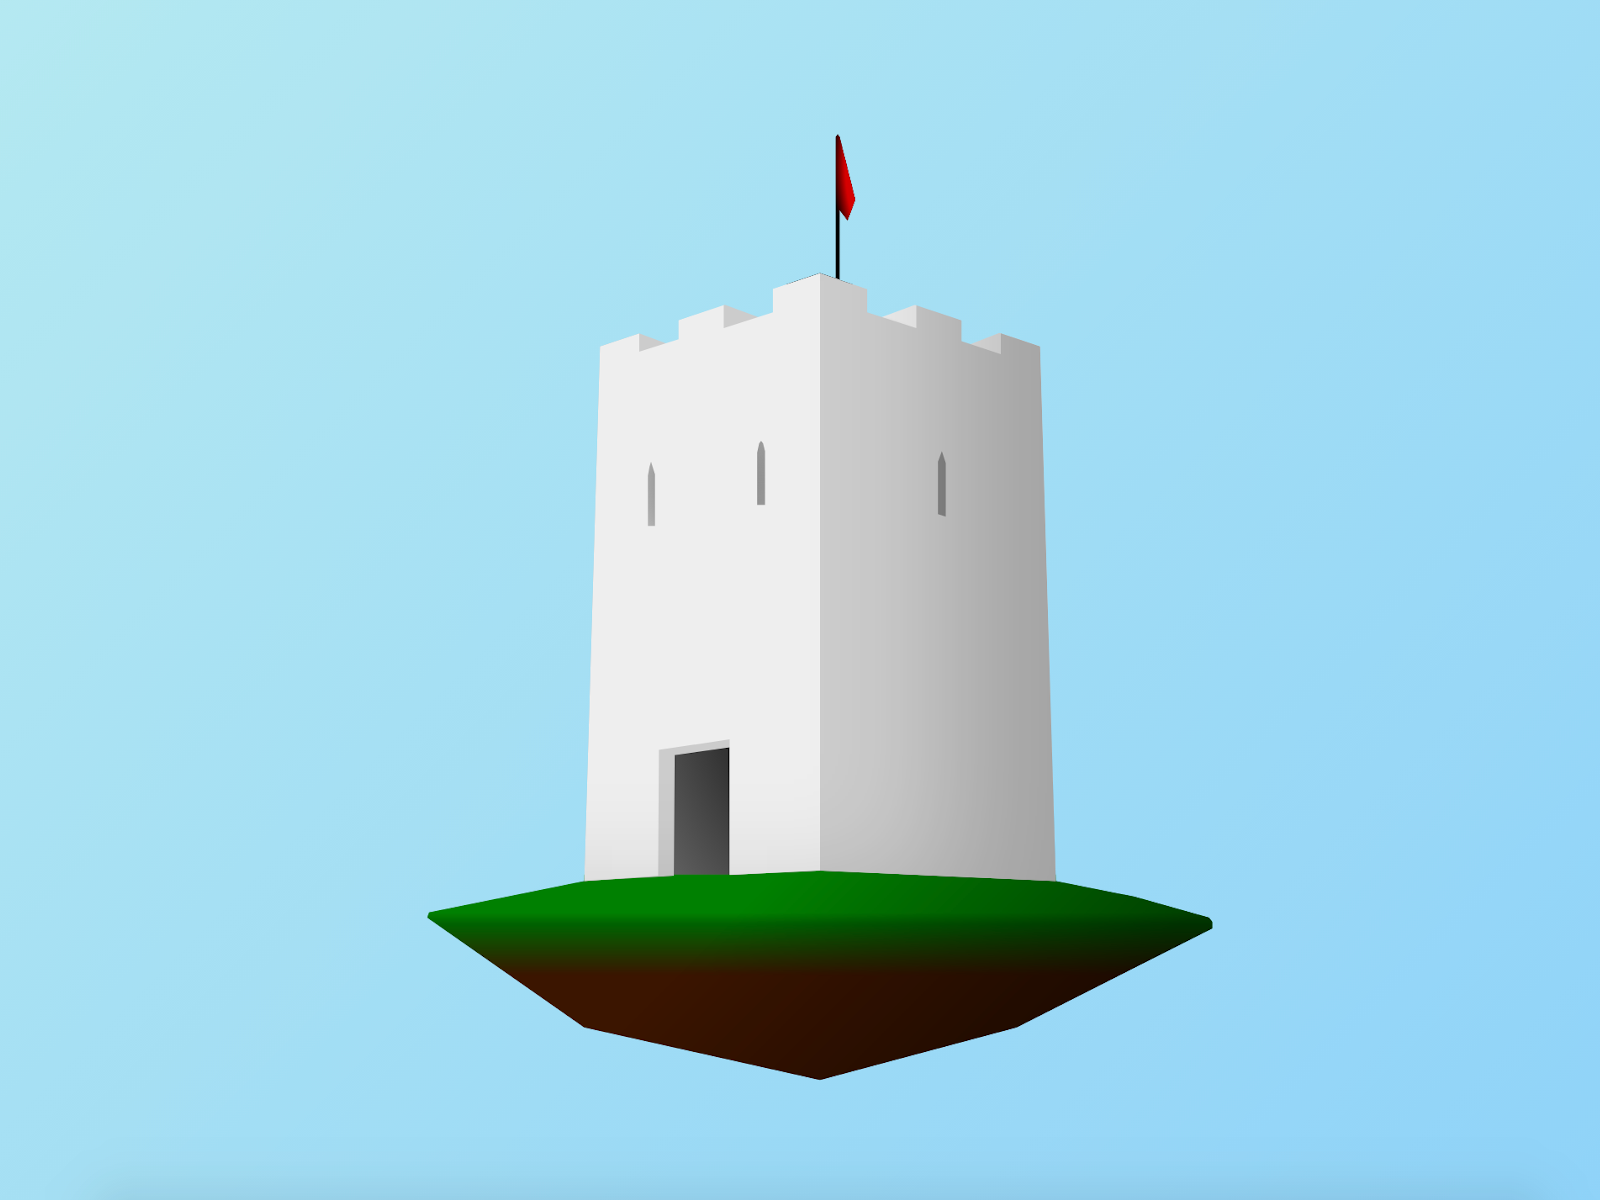 Illustration of a floating castle